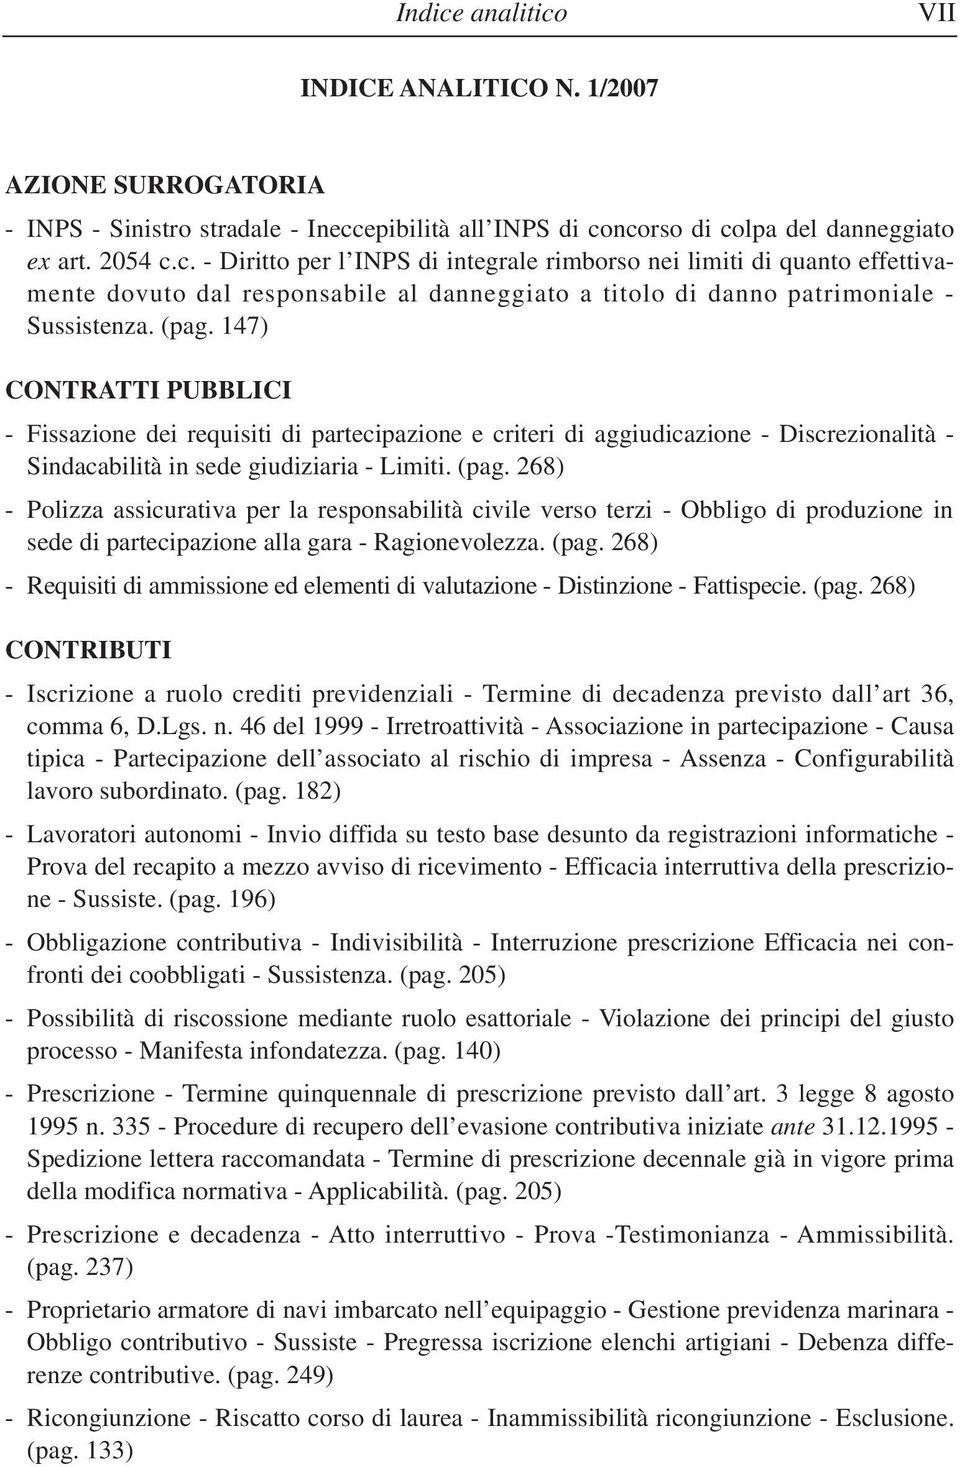 268) - Polizza assicurativa per la responsabilità civile verso terzi - Obbligo di produzione in sede di partecipazione alla gara - Ragionevolezza. (pag.